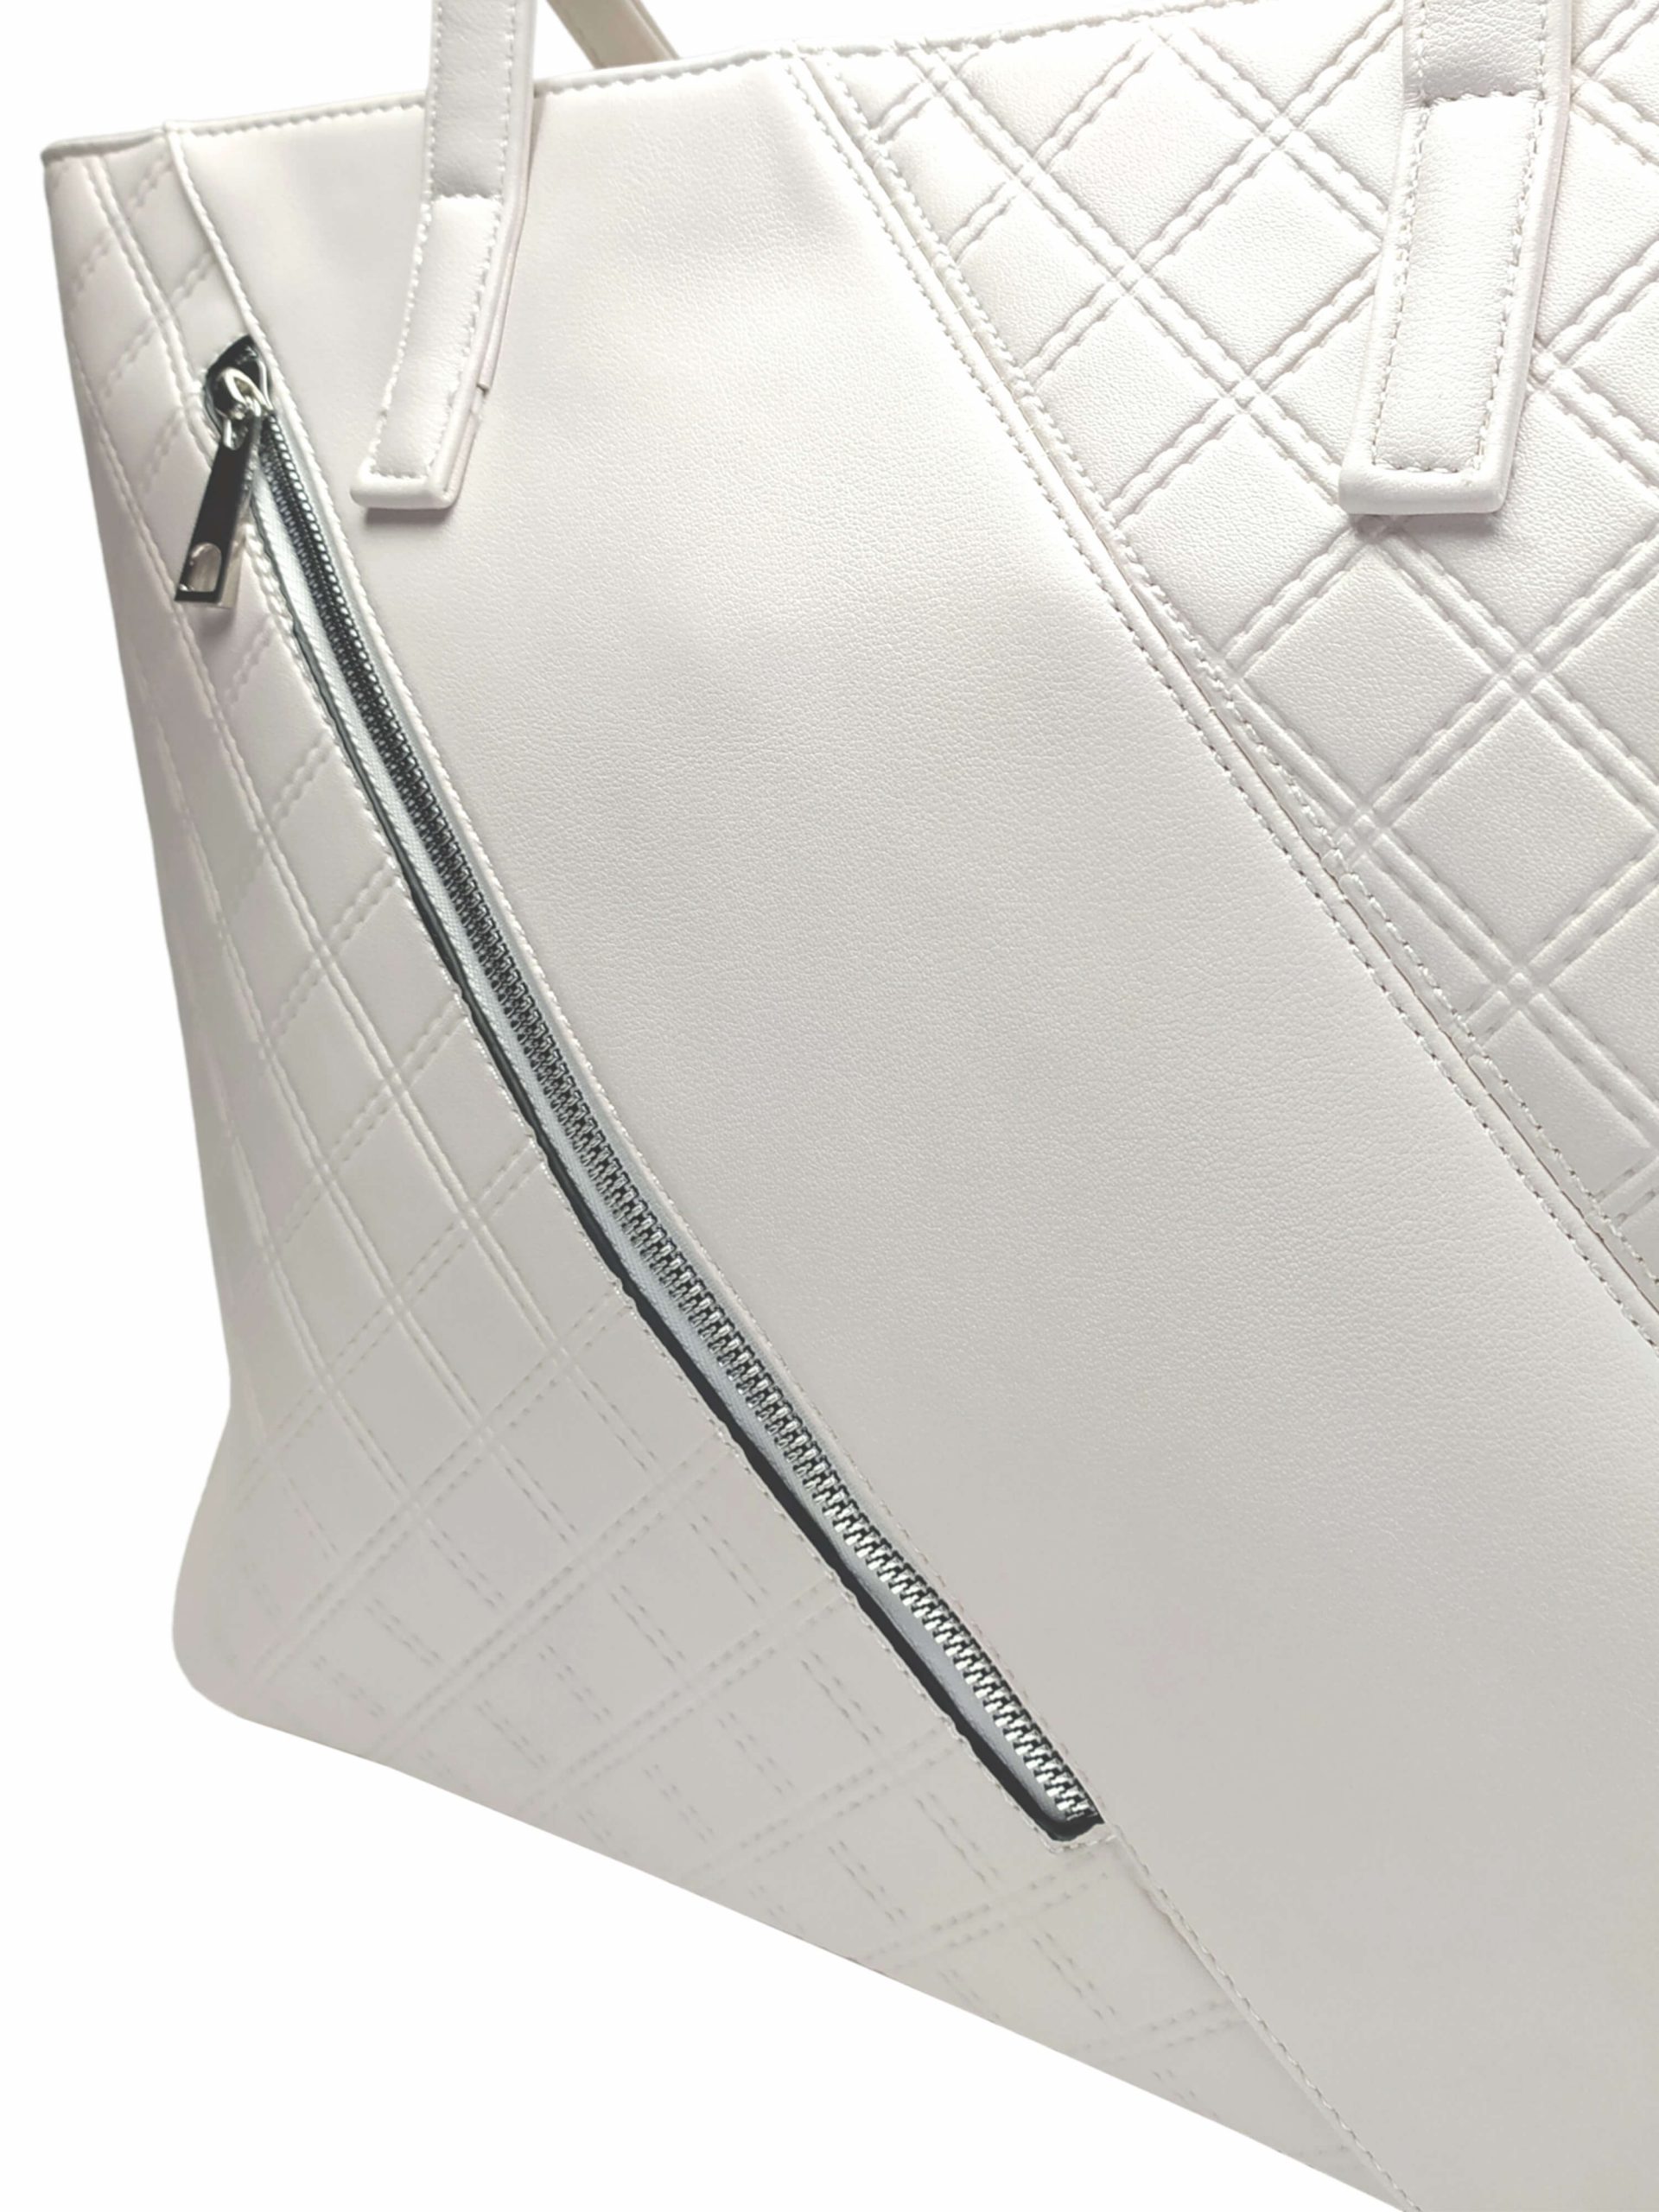 Perleťově bílá kabelka přes rameno s šikmou kapsou, Tapple, H17411, detail přední strany kabelky přes rameno